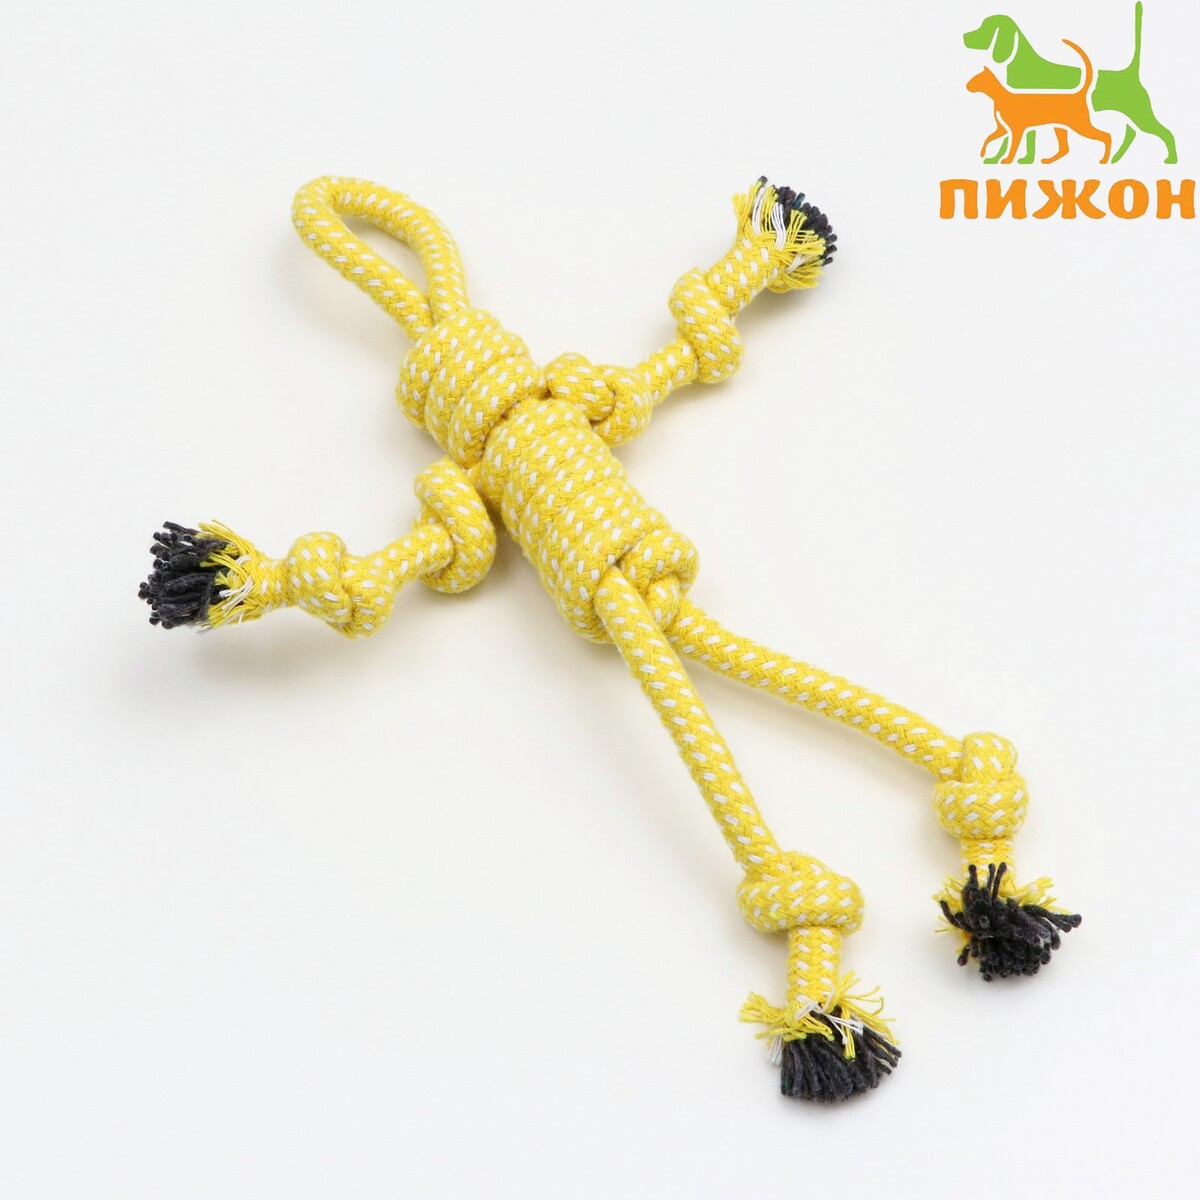 Игрушка канатная игрушка канатная плетеная с мячом до 45 см до 115 г голубая желтая